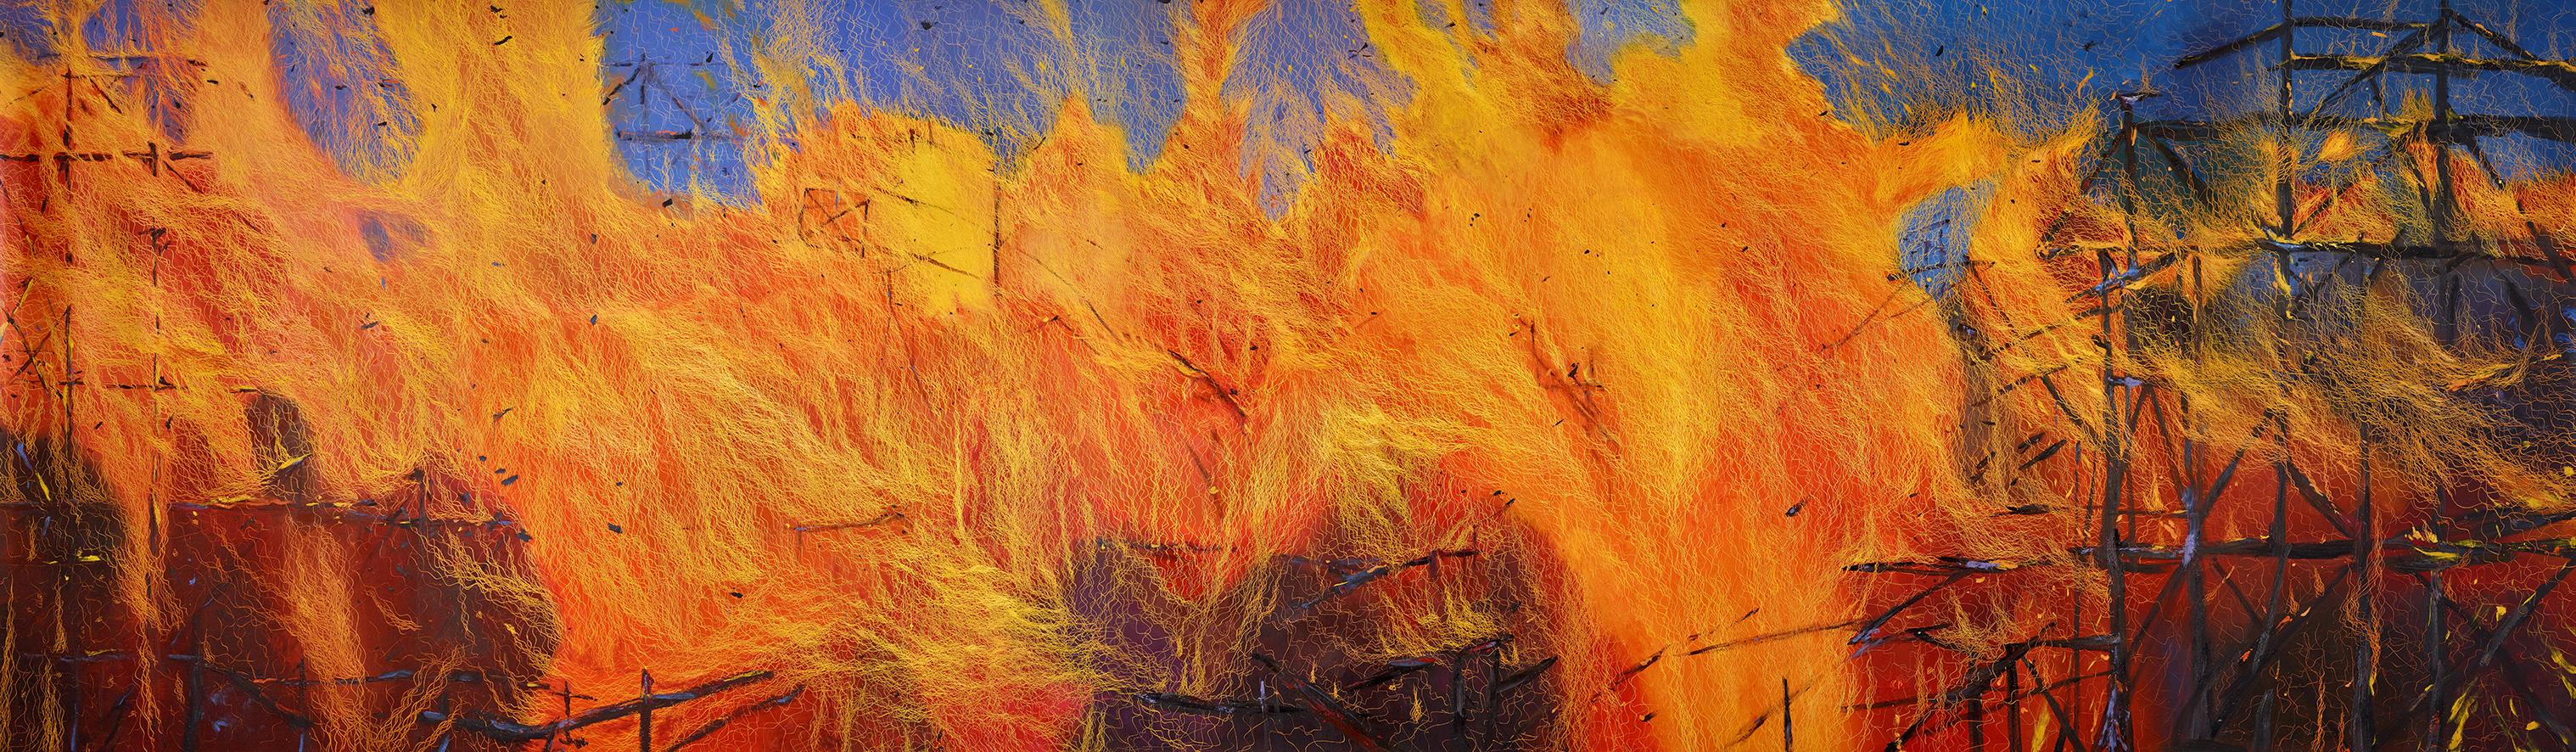 Fire Mural